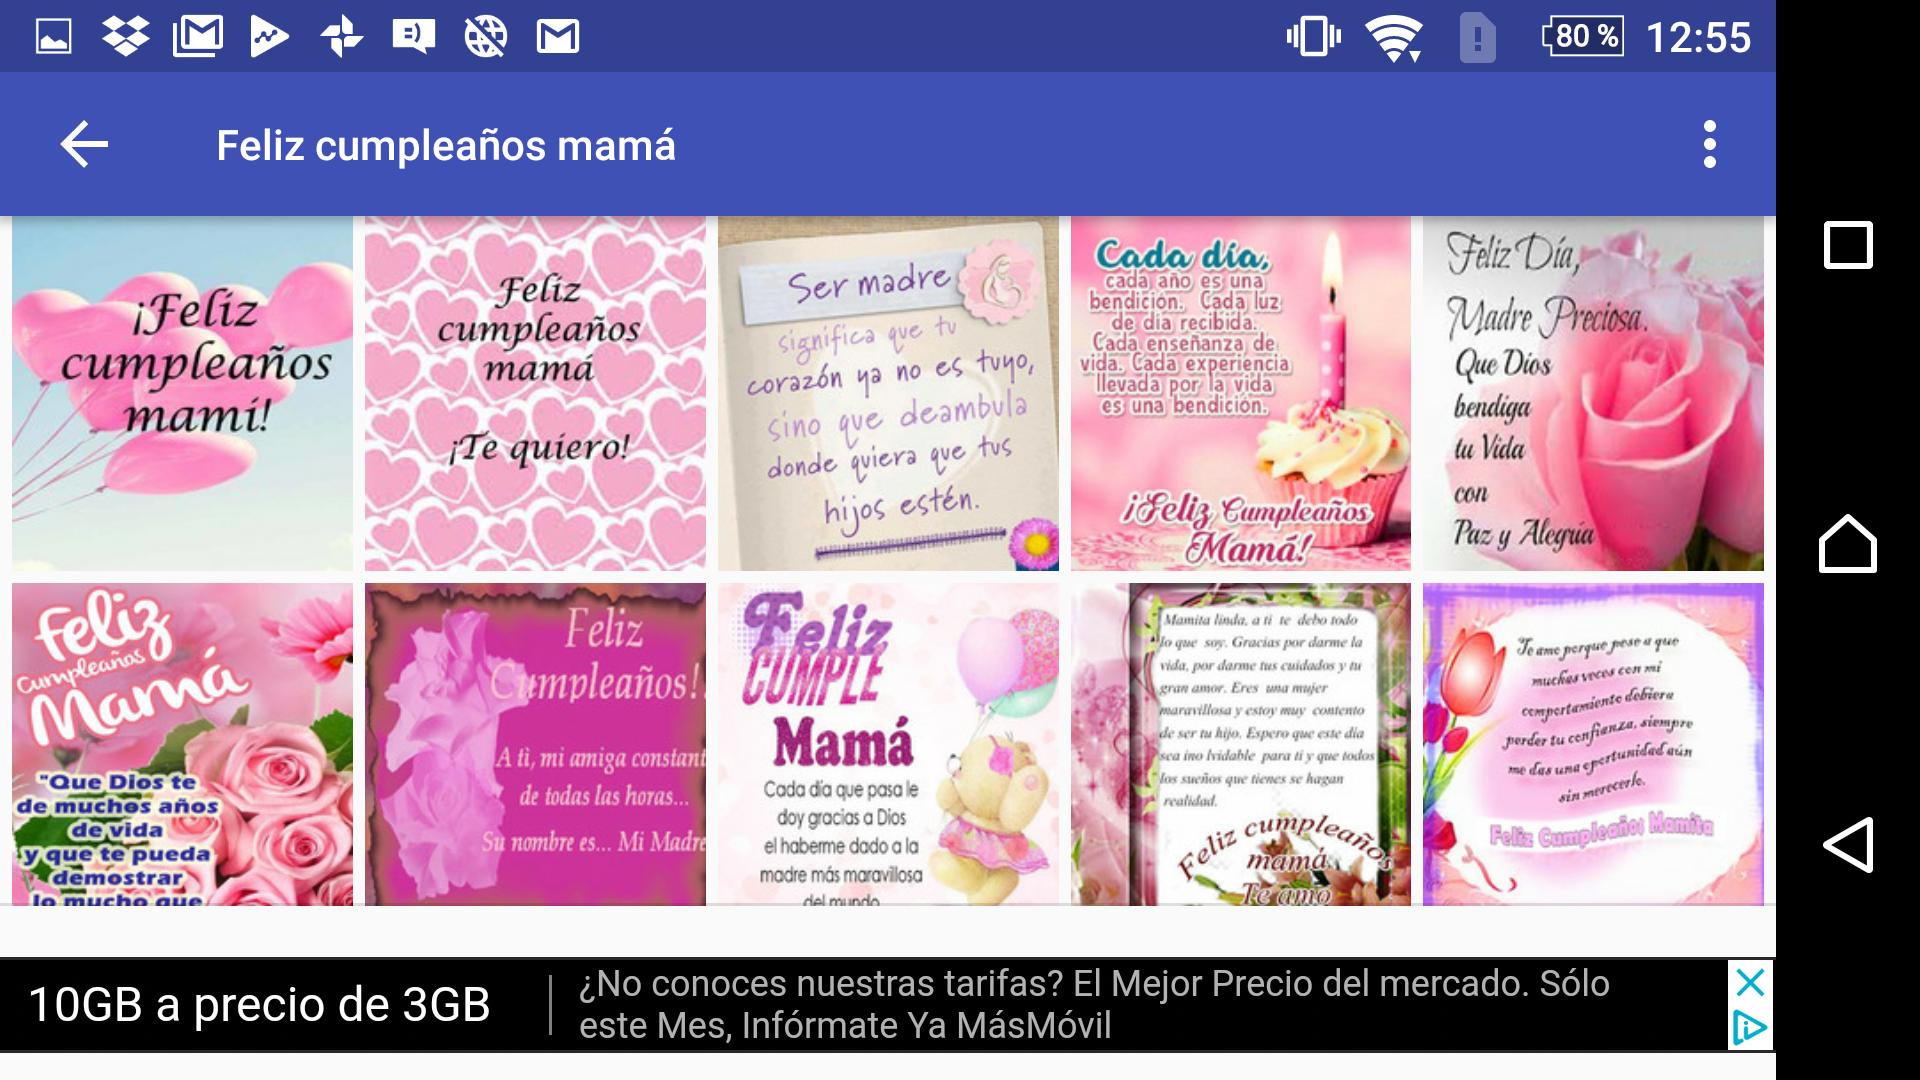 Feliz Cumpleanos Mama For Android Apk Download - feliz cumpleaños mama roblox